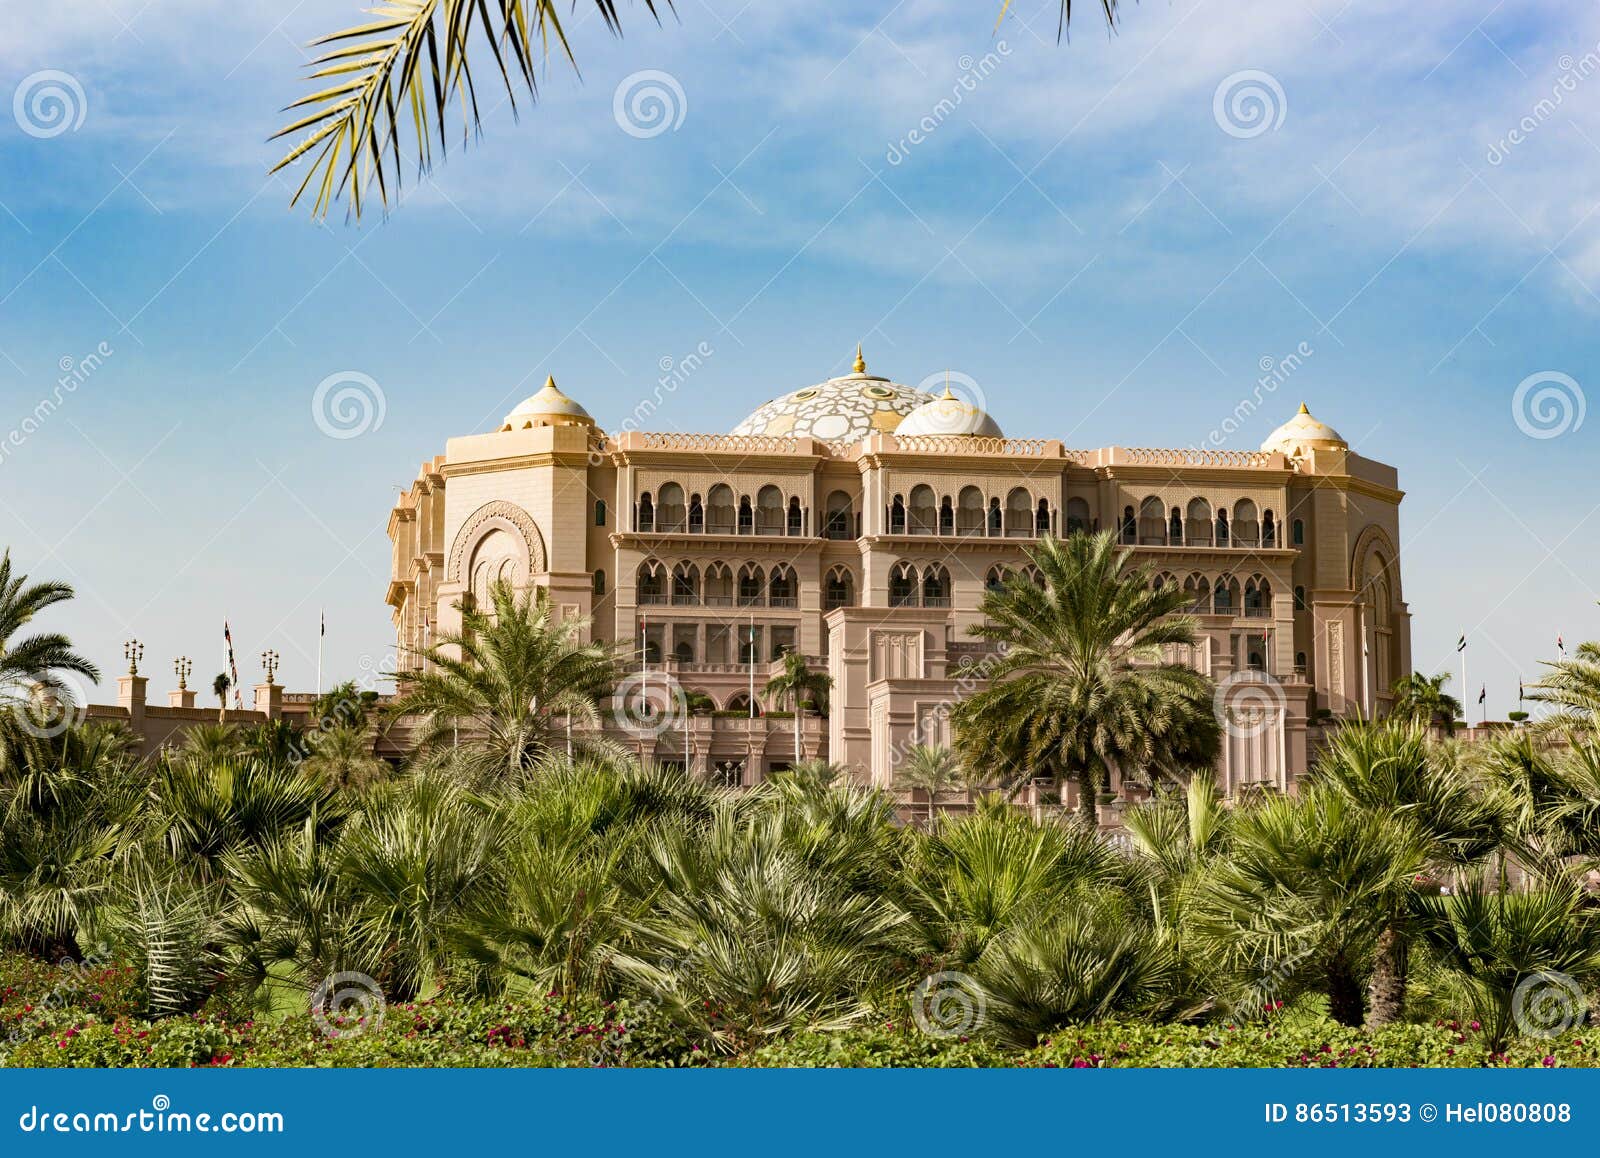 emirates palace, luxury hotel, abu dhabi